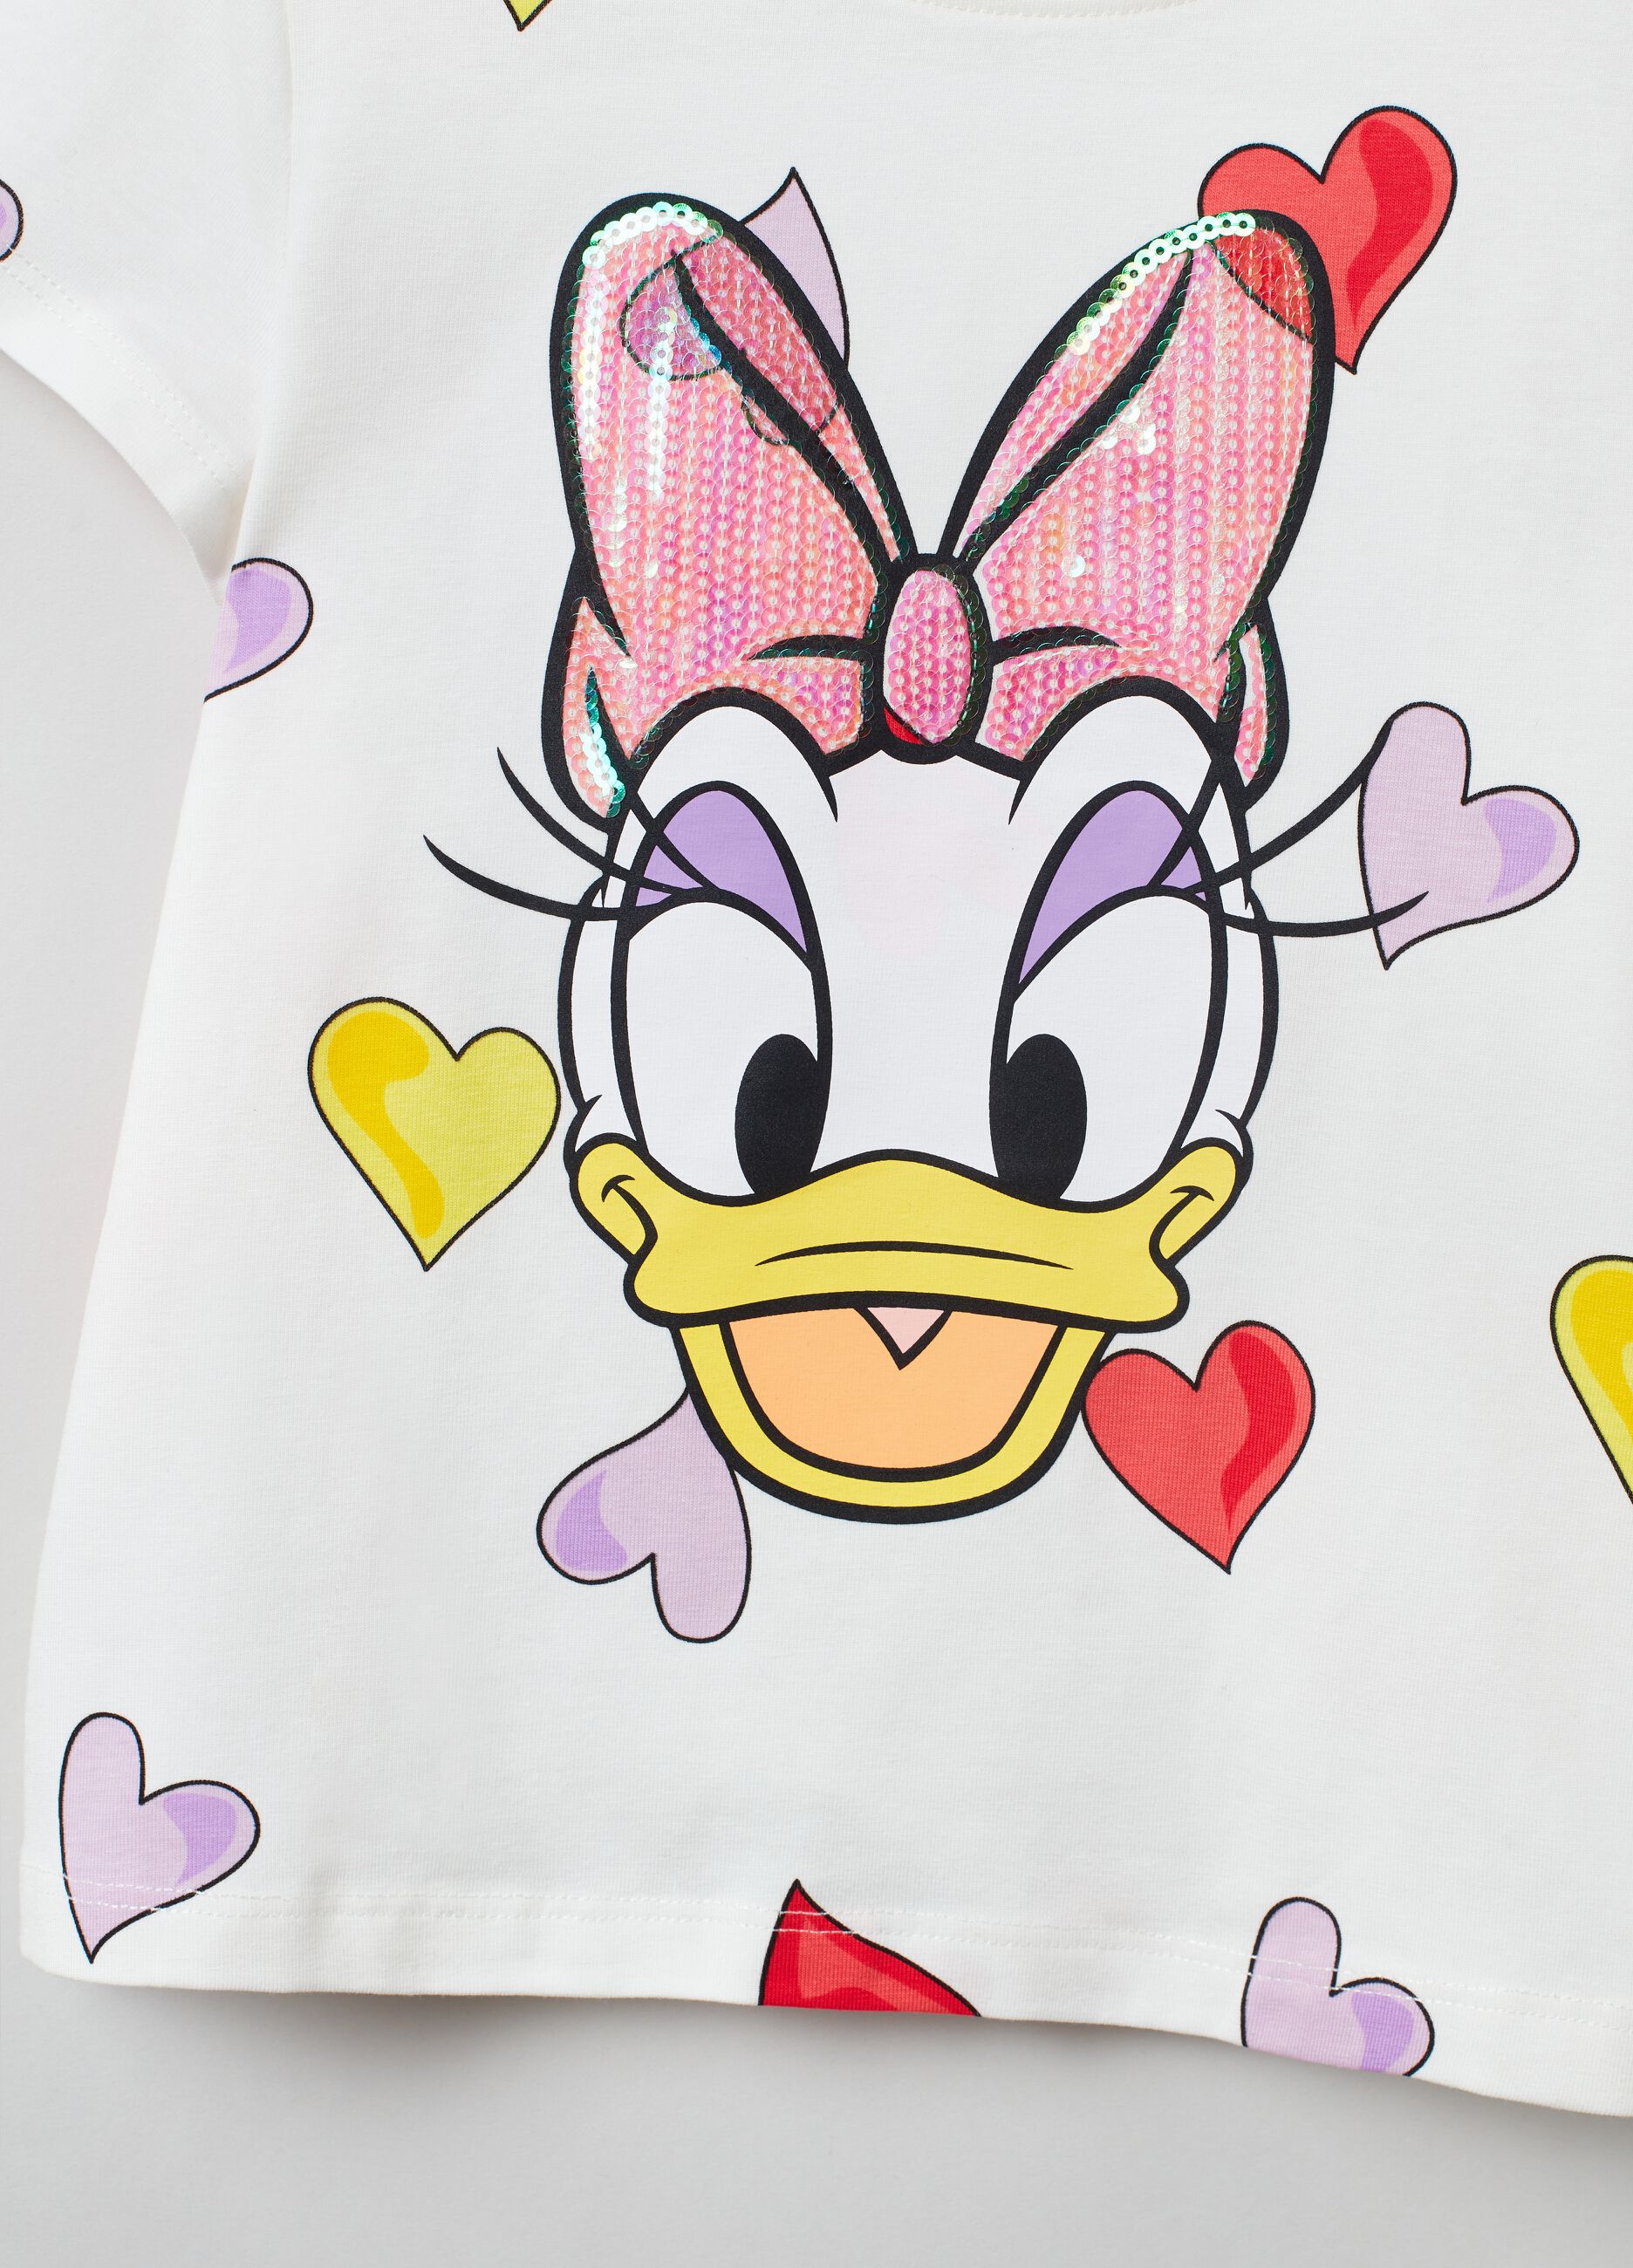 Disney Daisy Duck T-shirt with hearts